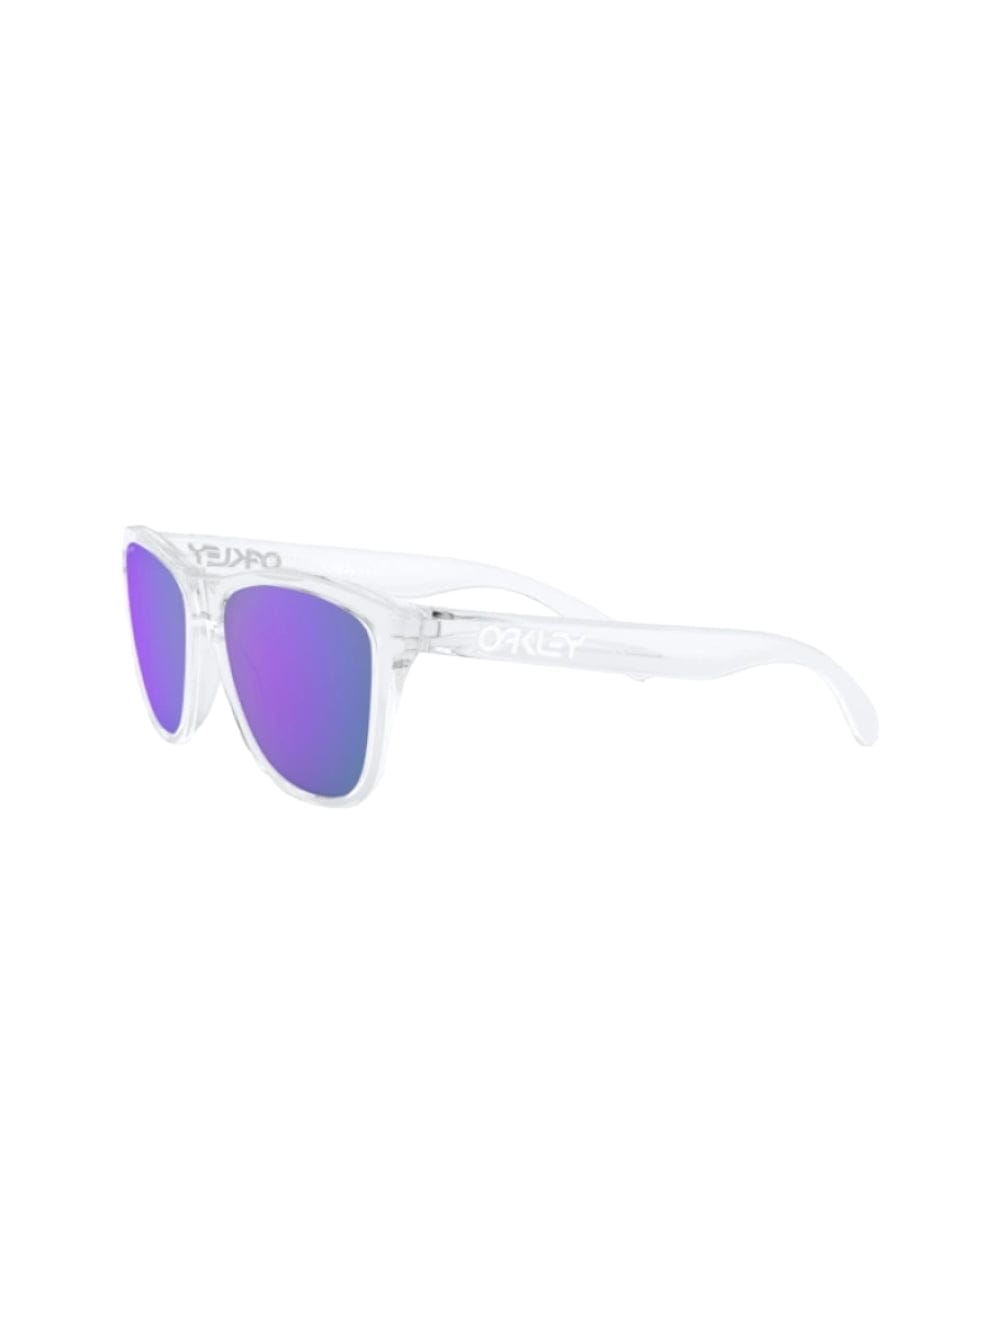 Shop Oakley Frogskins - 9013 Sunglasses